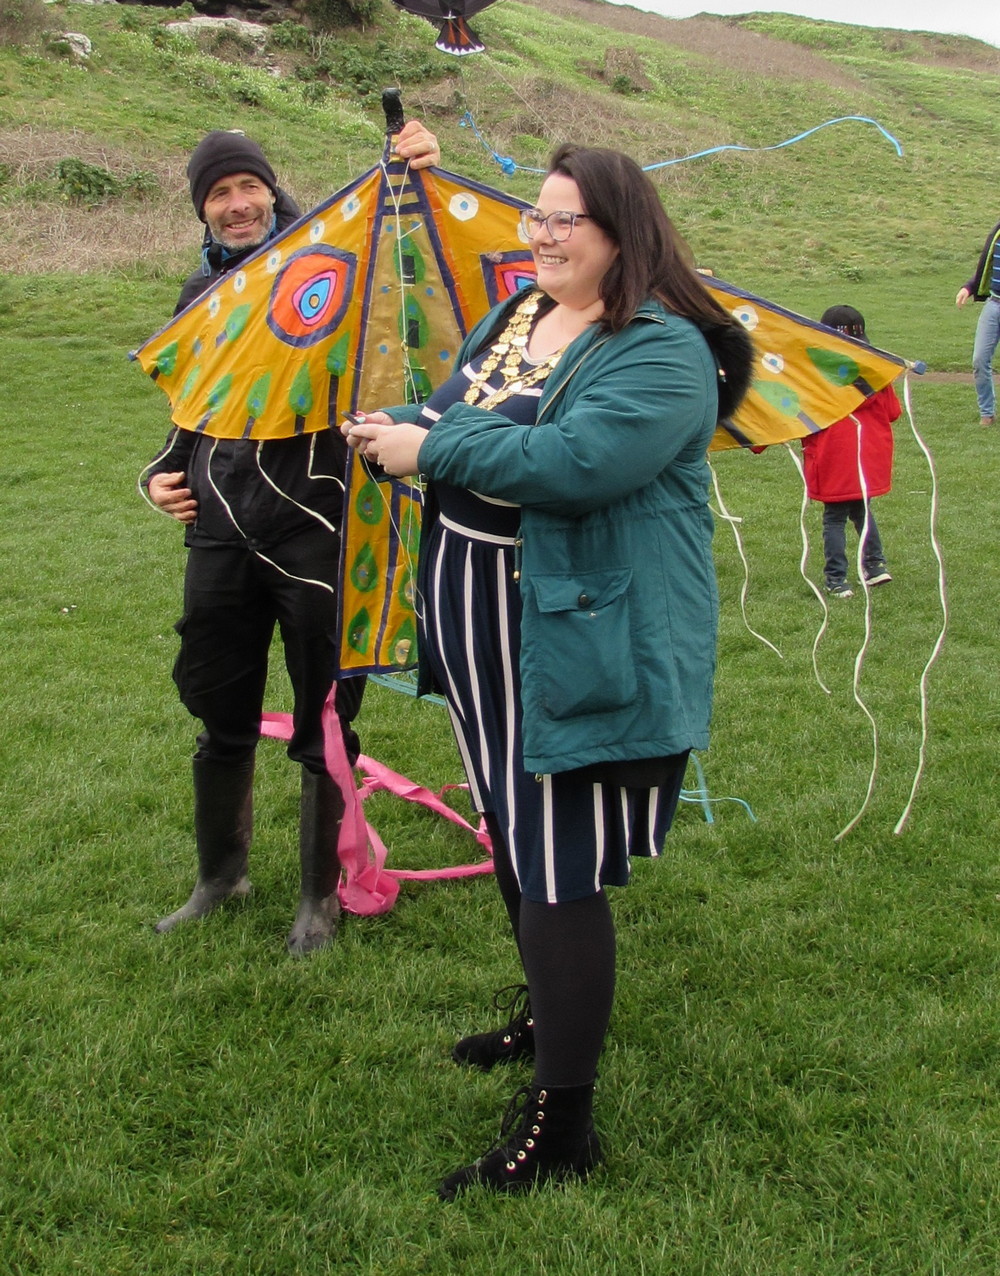 kite fest mayor